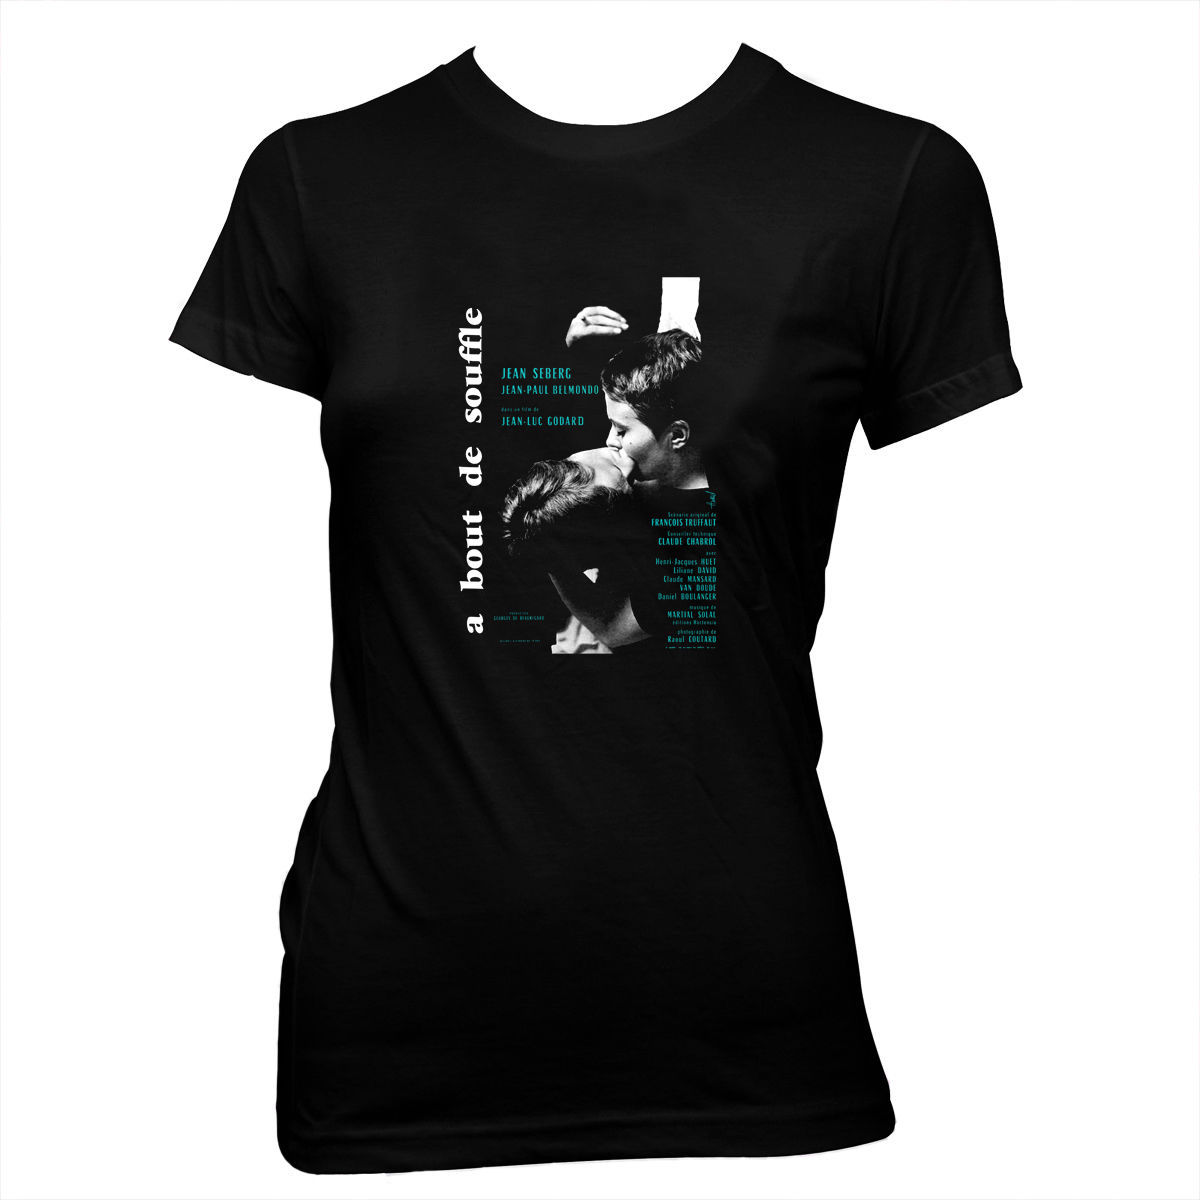 À bout de souffle - Jean-Luc Godard - Women's Pre-shrunk, 100% Cotton T-Shirt